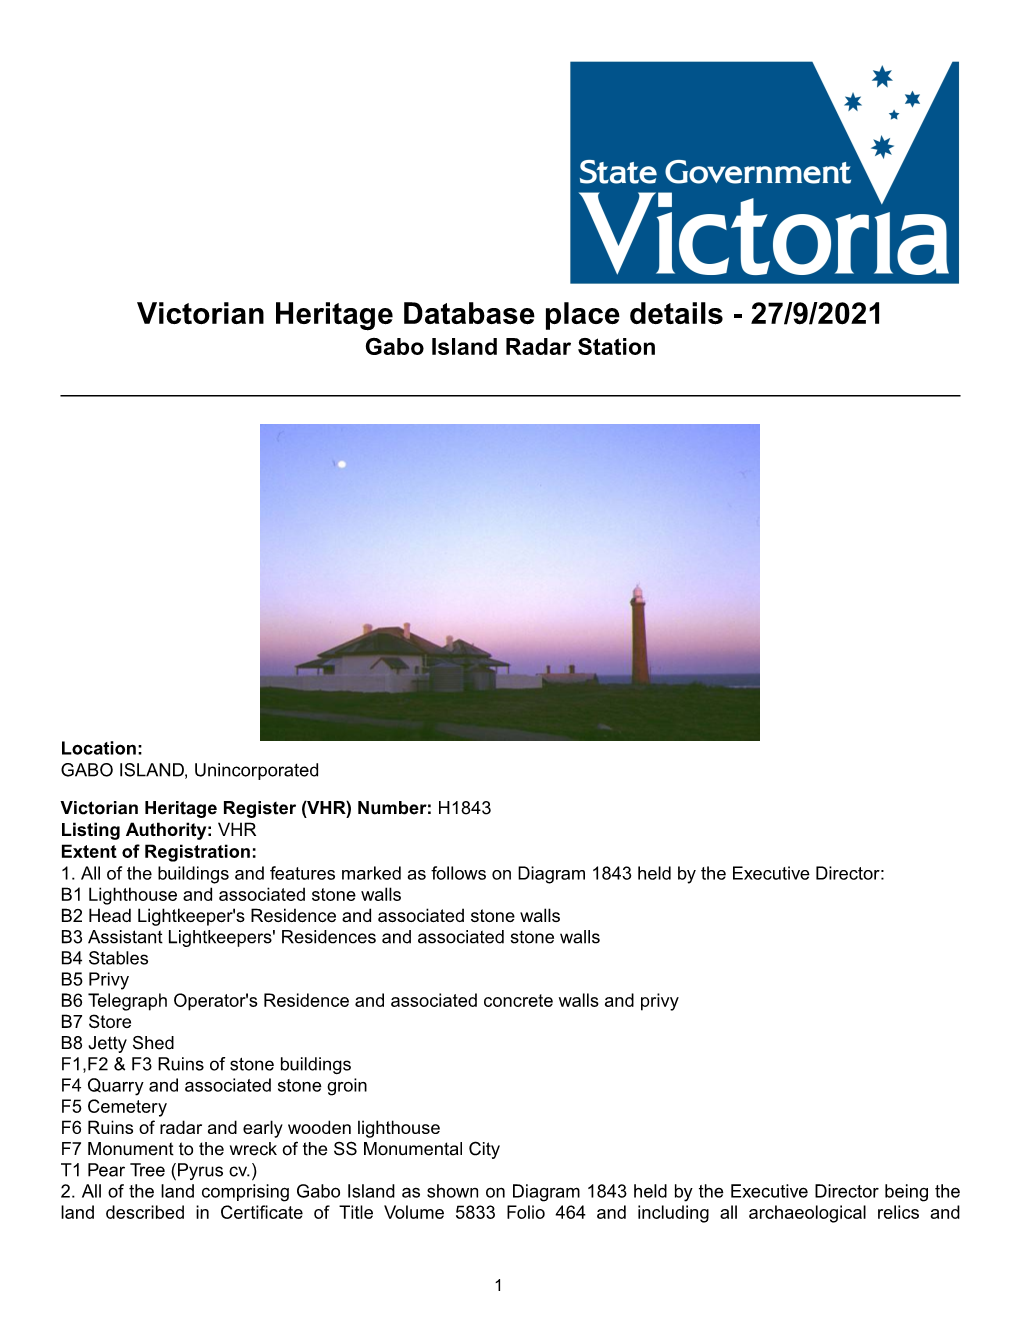 Victorian Heritage Database Place Details - 27/9/2021 Gabo Island Radar Station